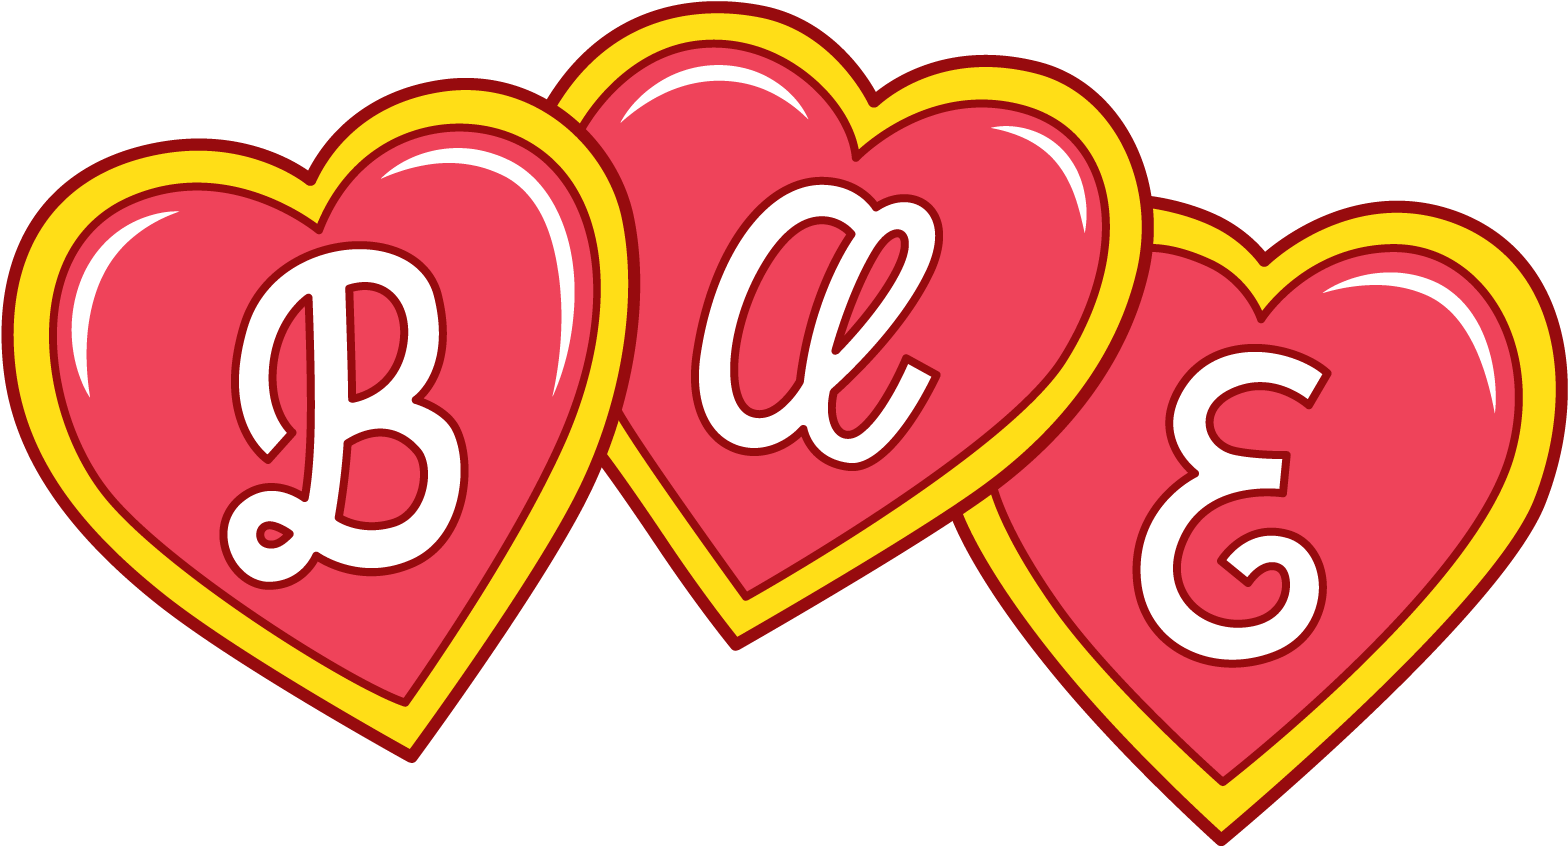 Three Hearts B A E Sticker PNG image